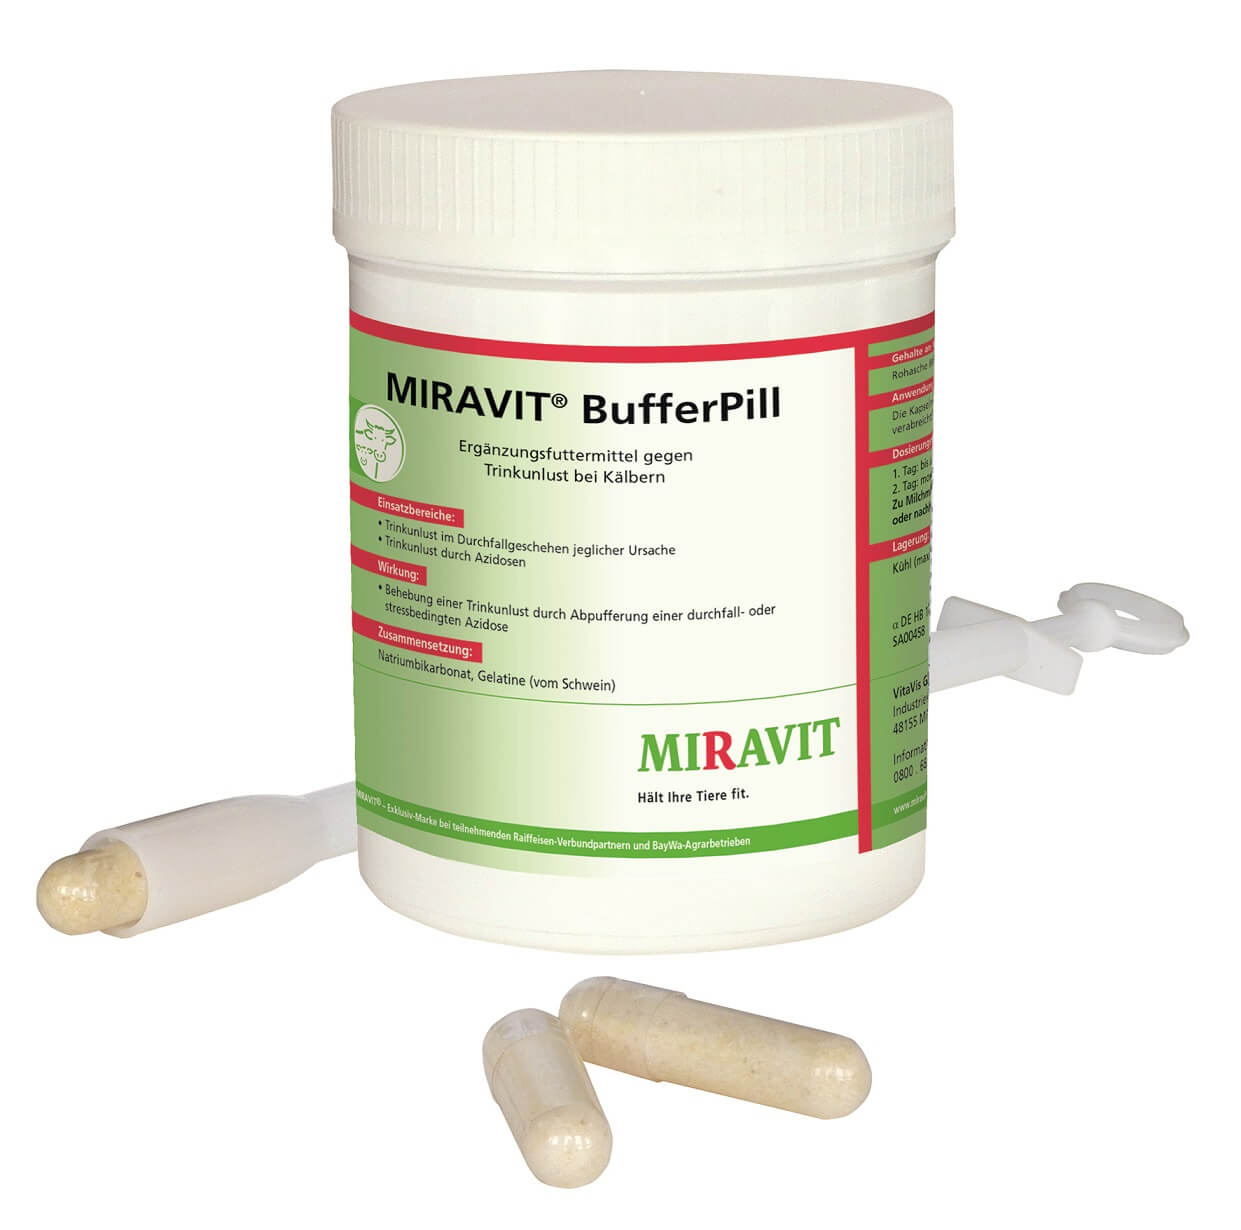 MIRAVIT® BufferPill